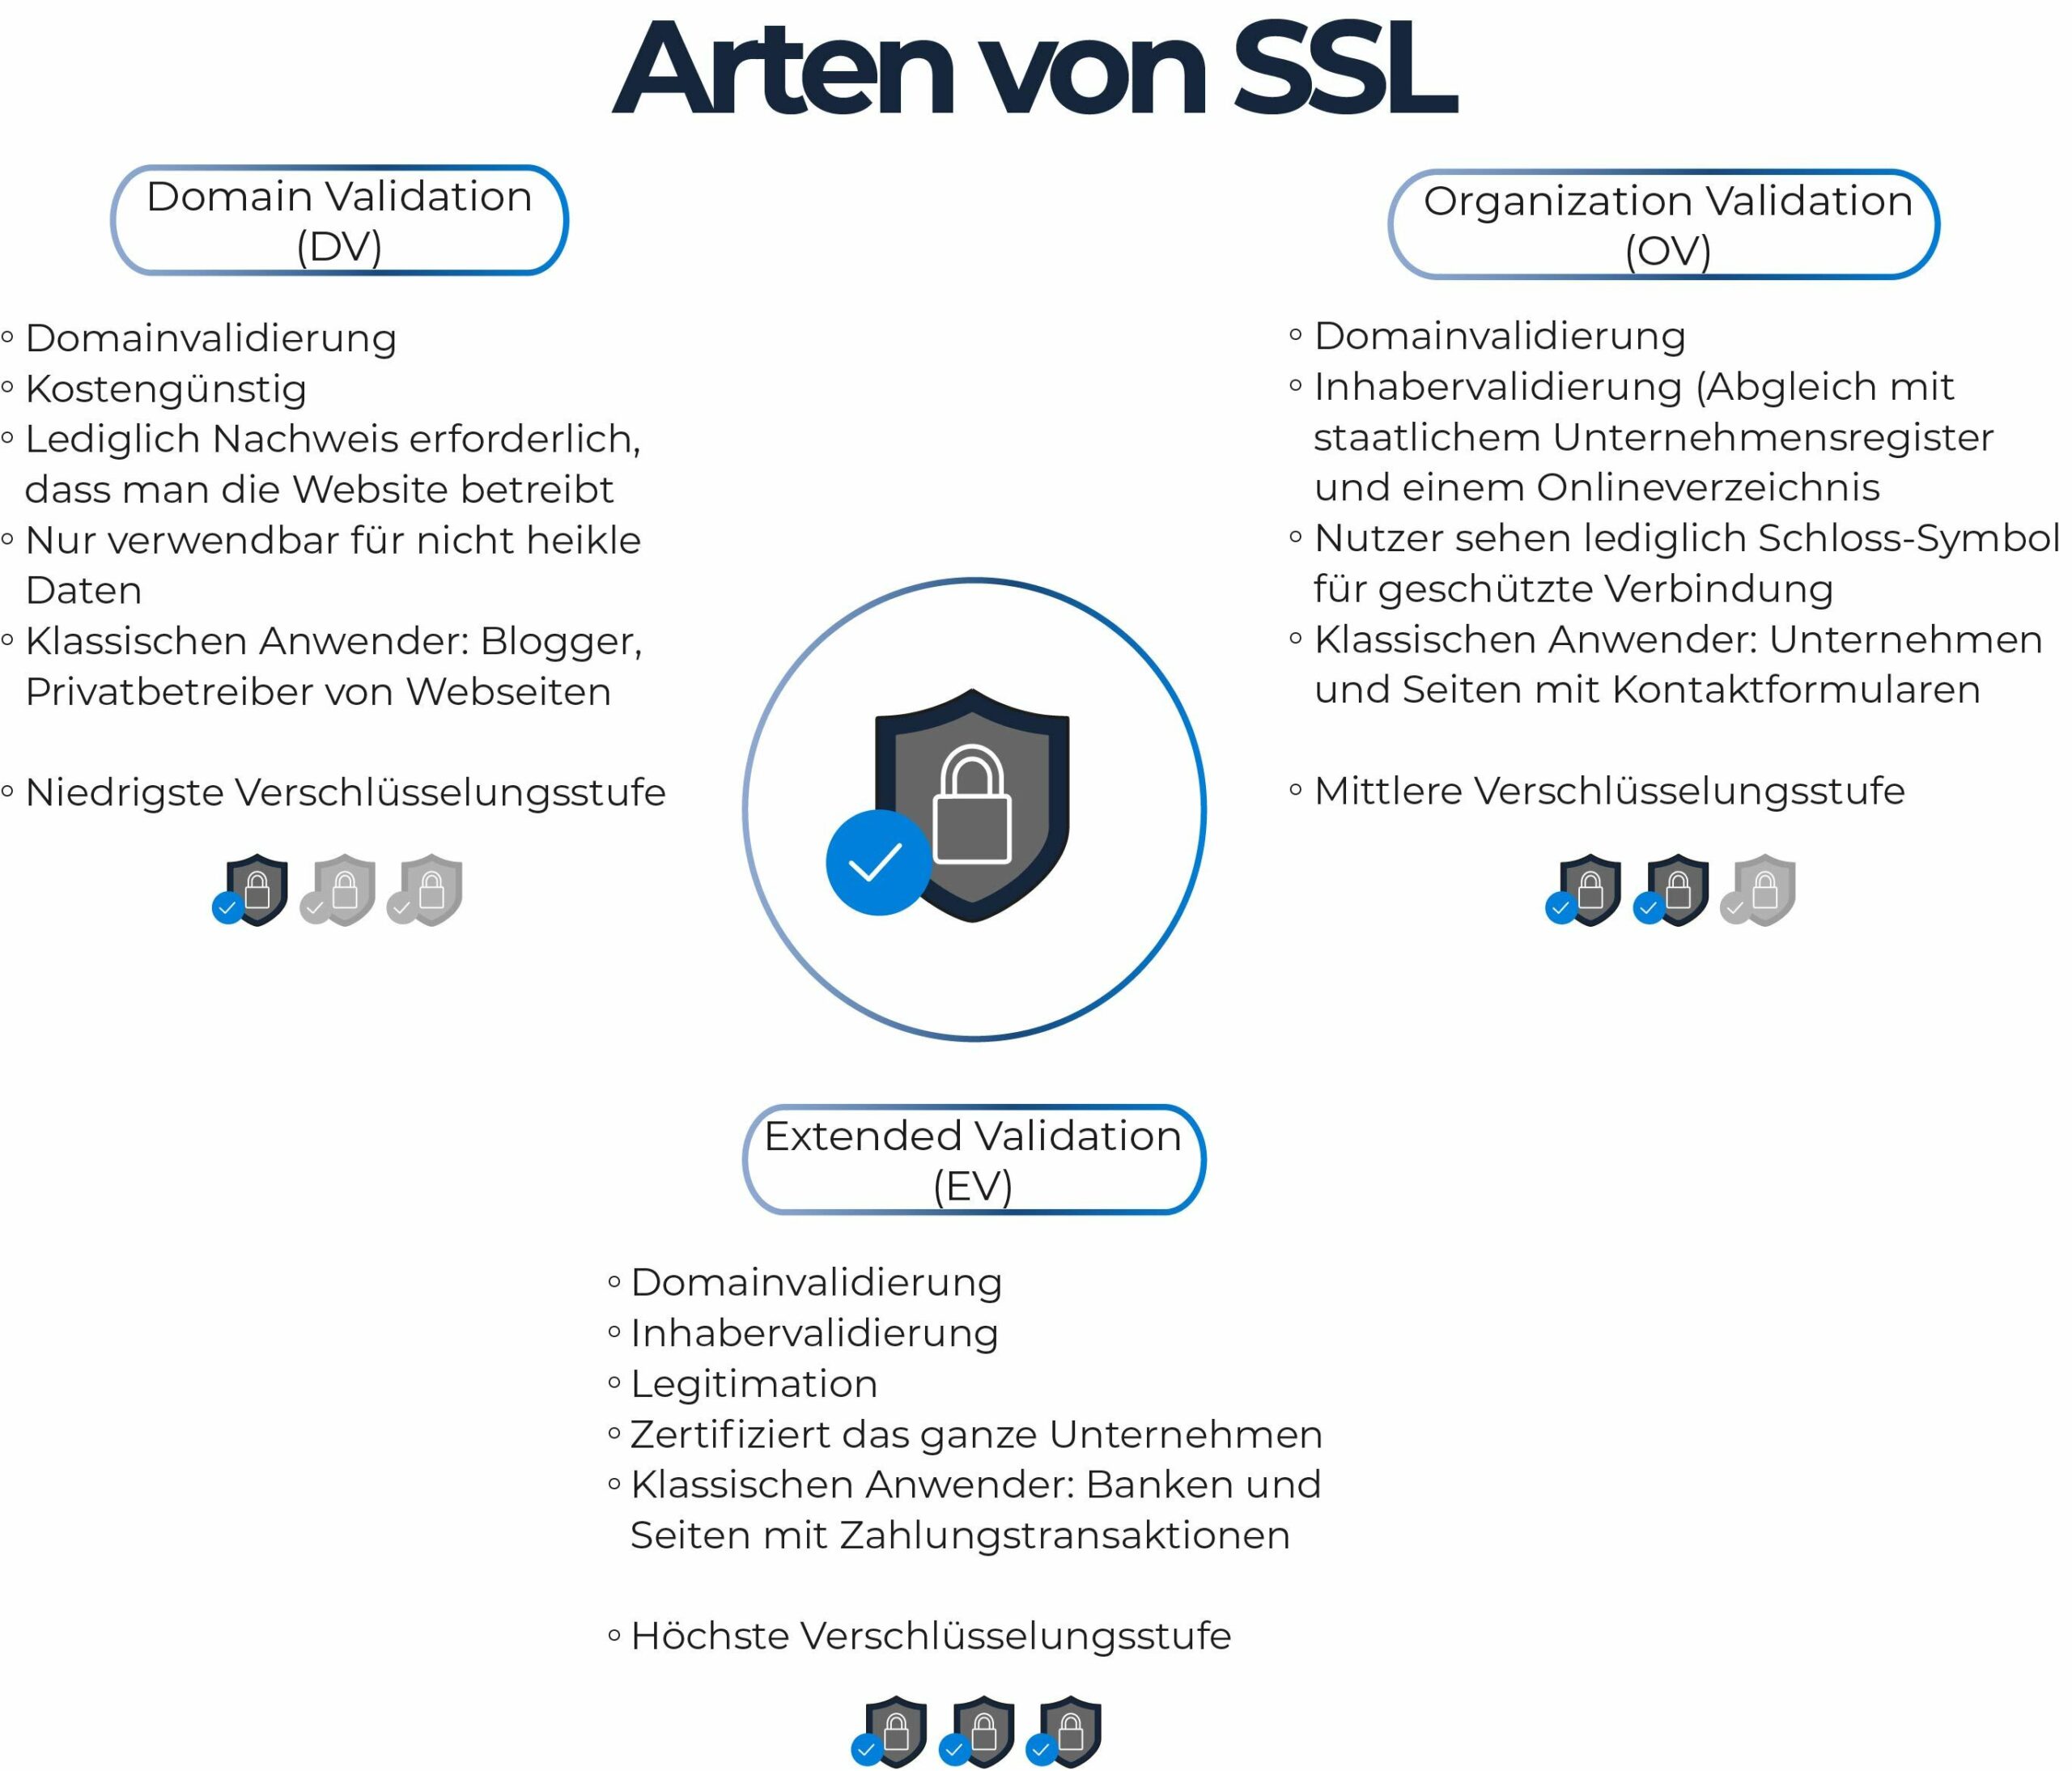 Arten von SSL